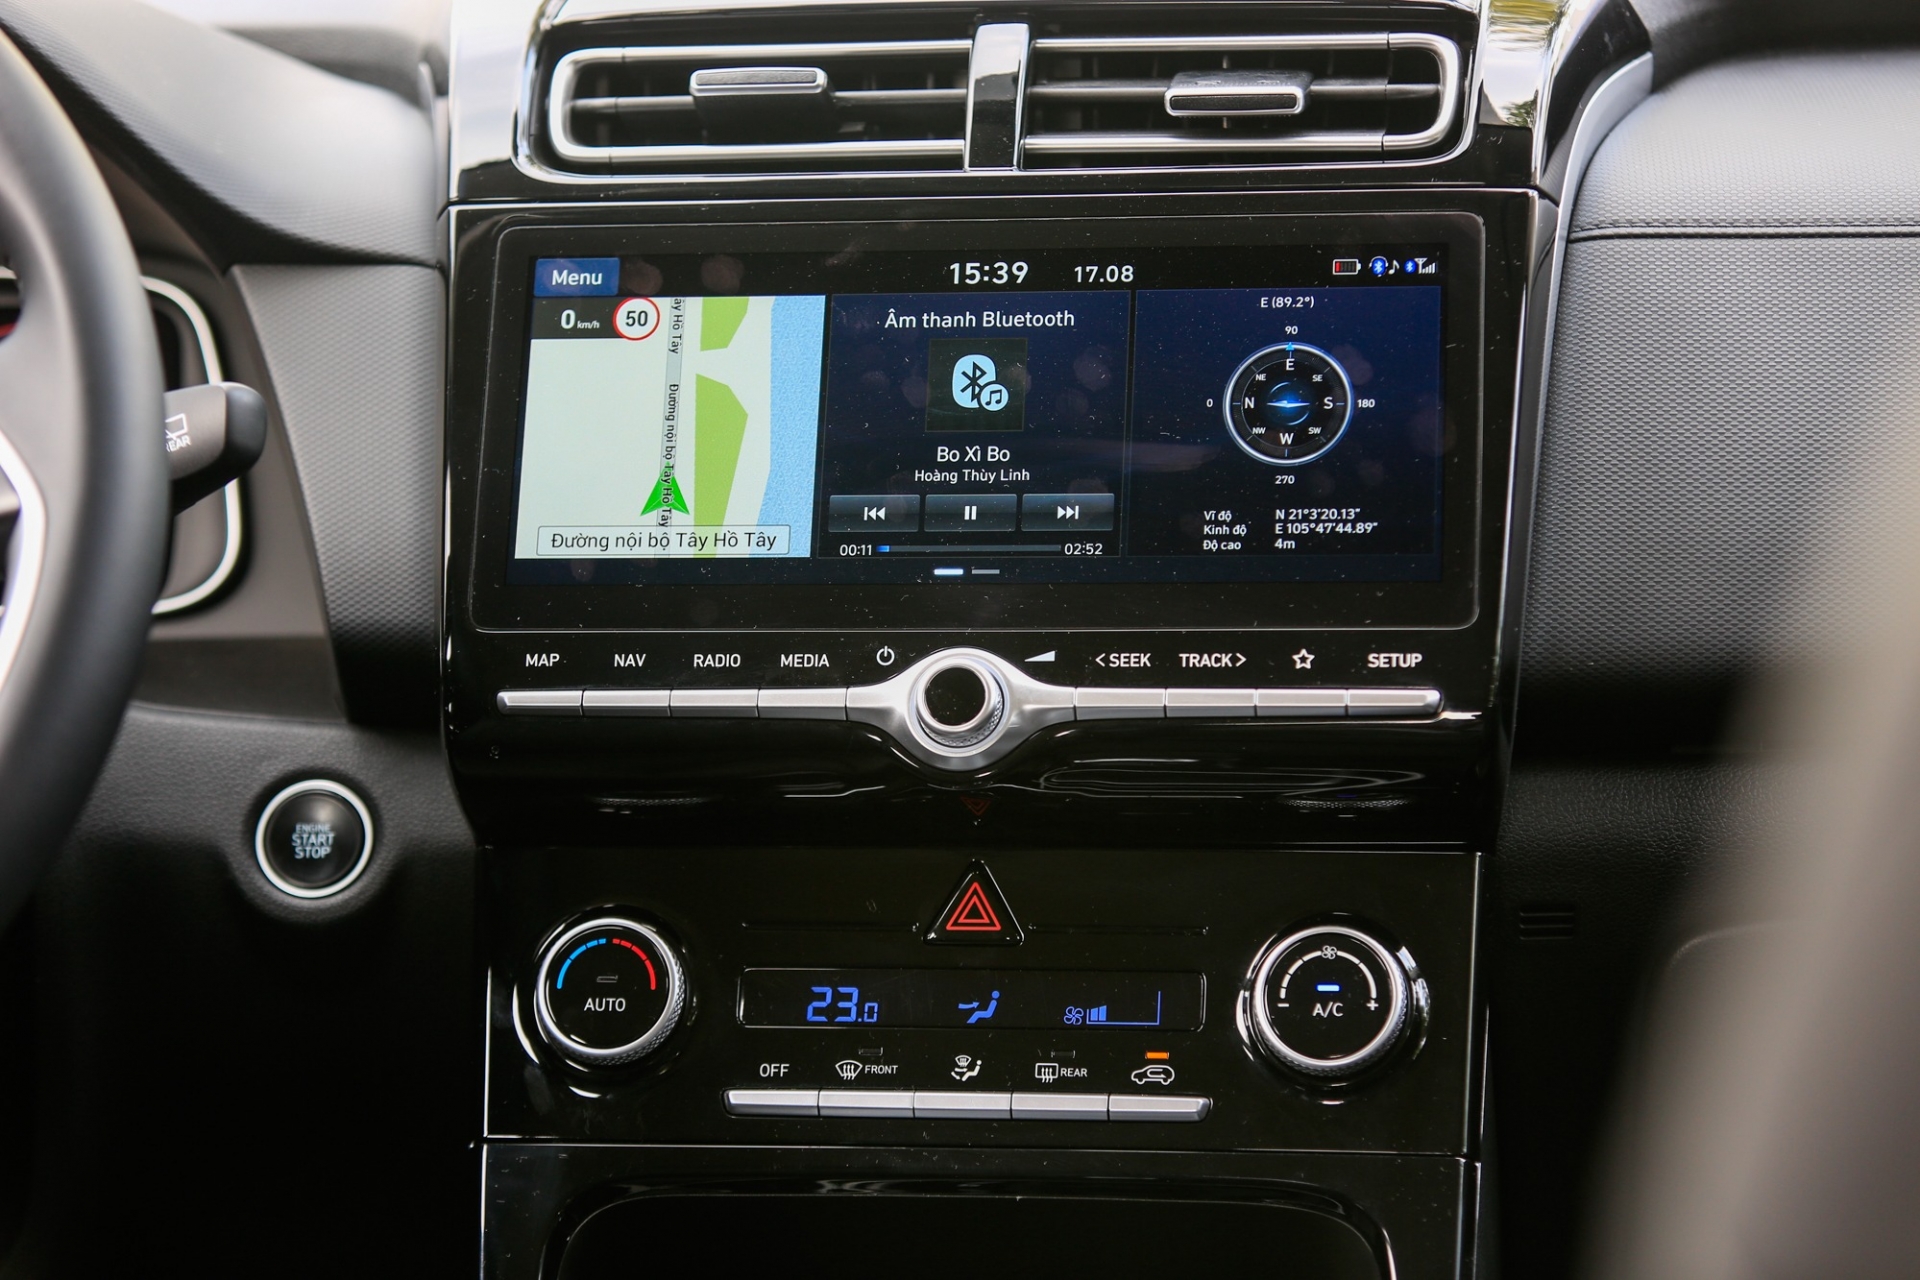 Creta trang bị màn hình cảm ứng 10.25 inch hỗ trợ Bluetooth, Apple CarPlay và Android Auto